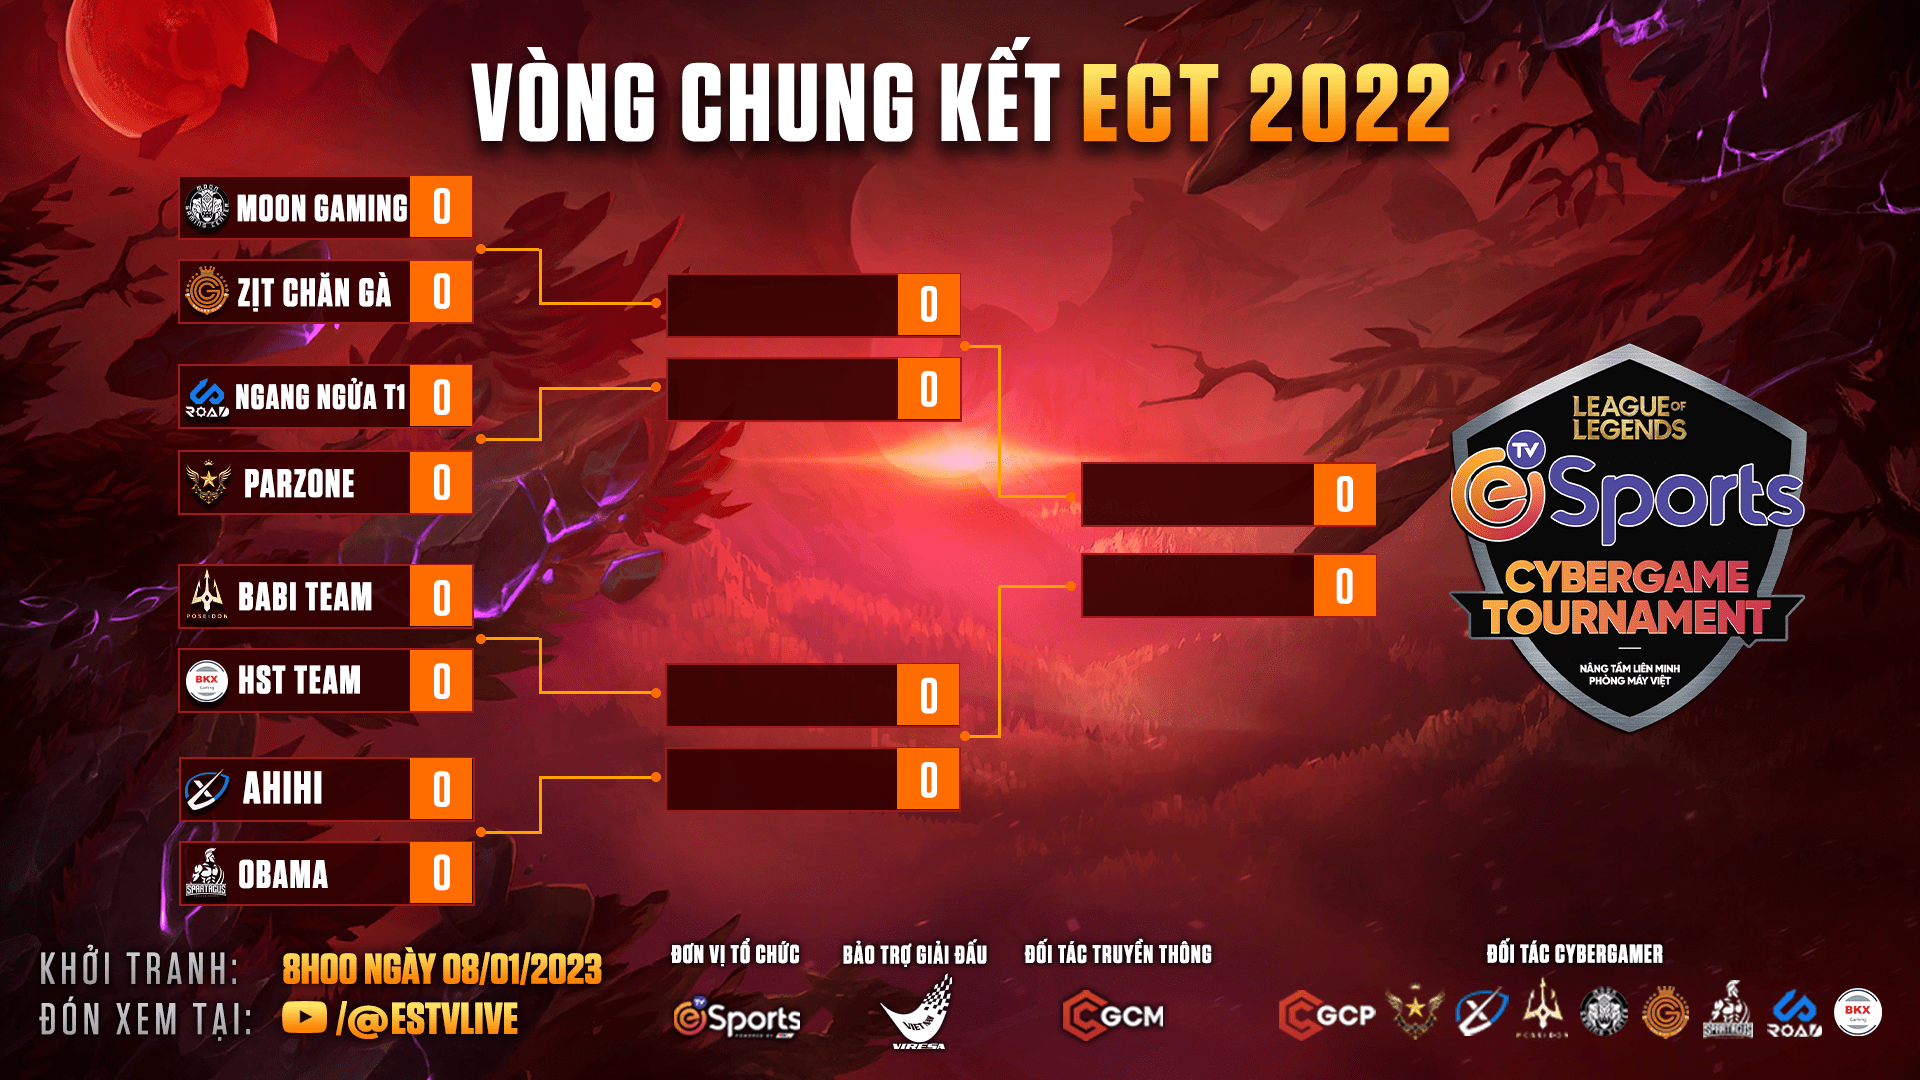 Kết quả eSportsTV CyberGame Tournament (ECT) 2022: Đại diện Poseidon Cyber Game lên ngôi vô địch sau chung kết kịch tính